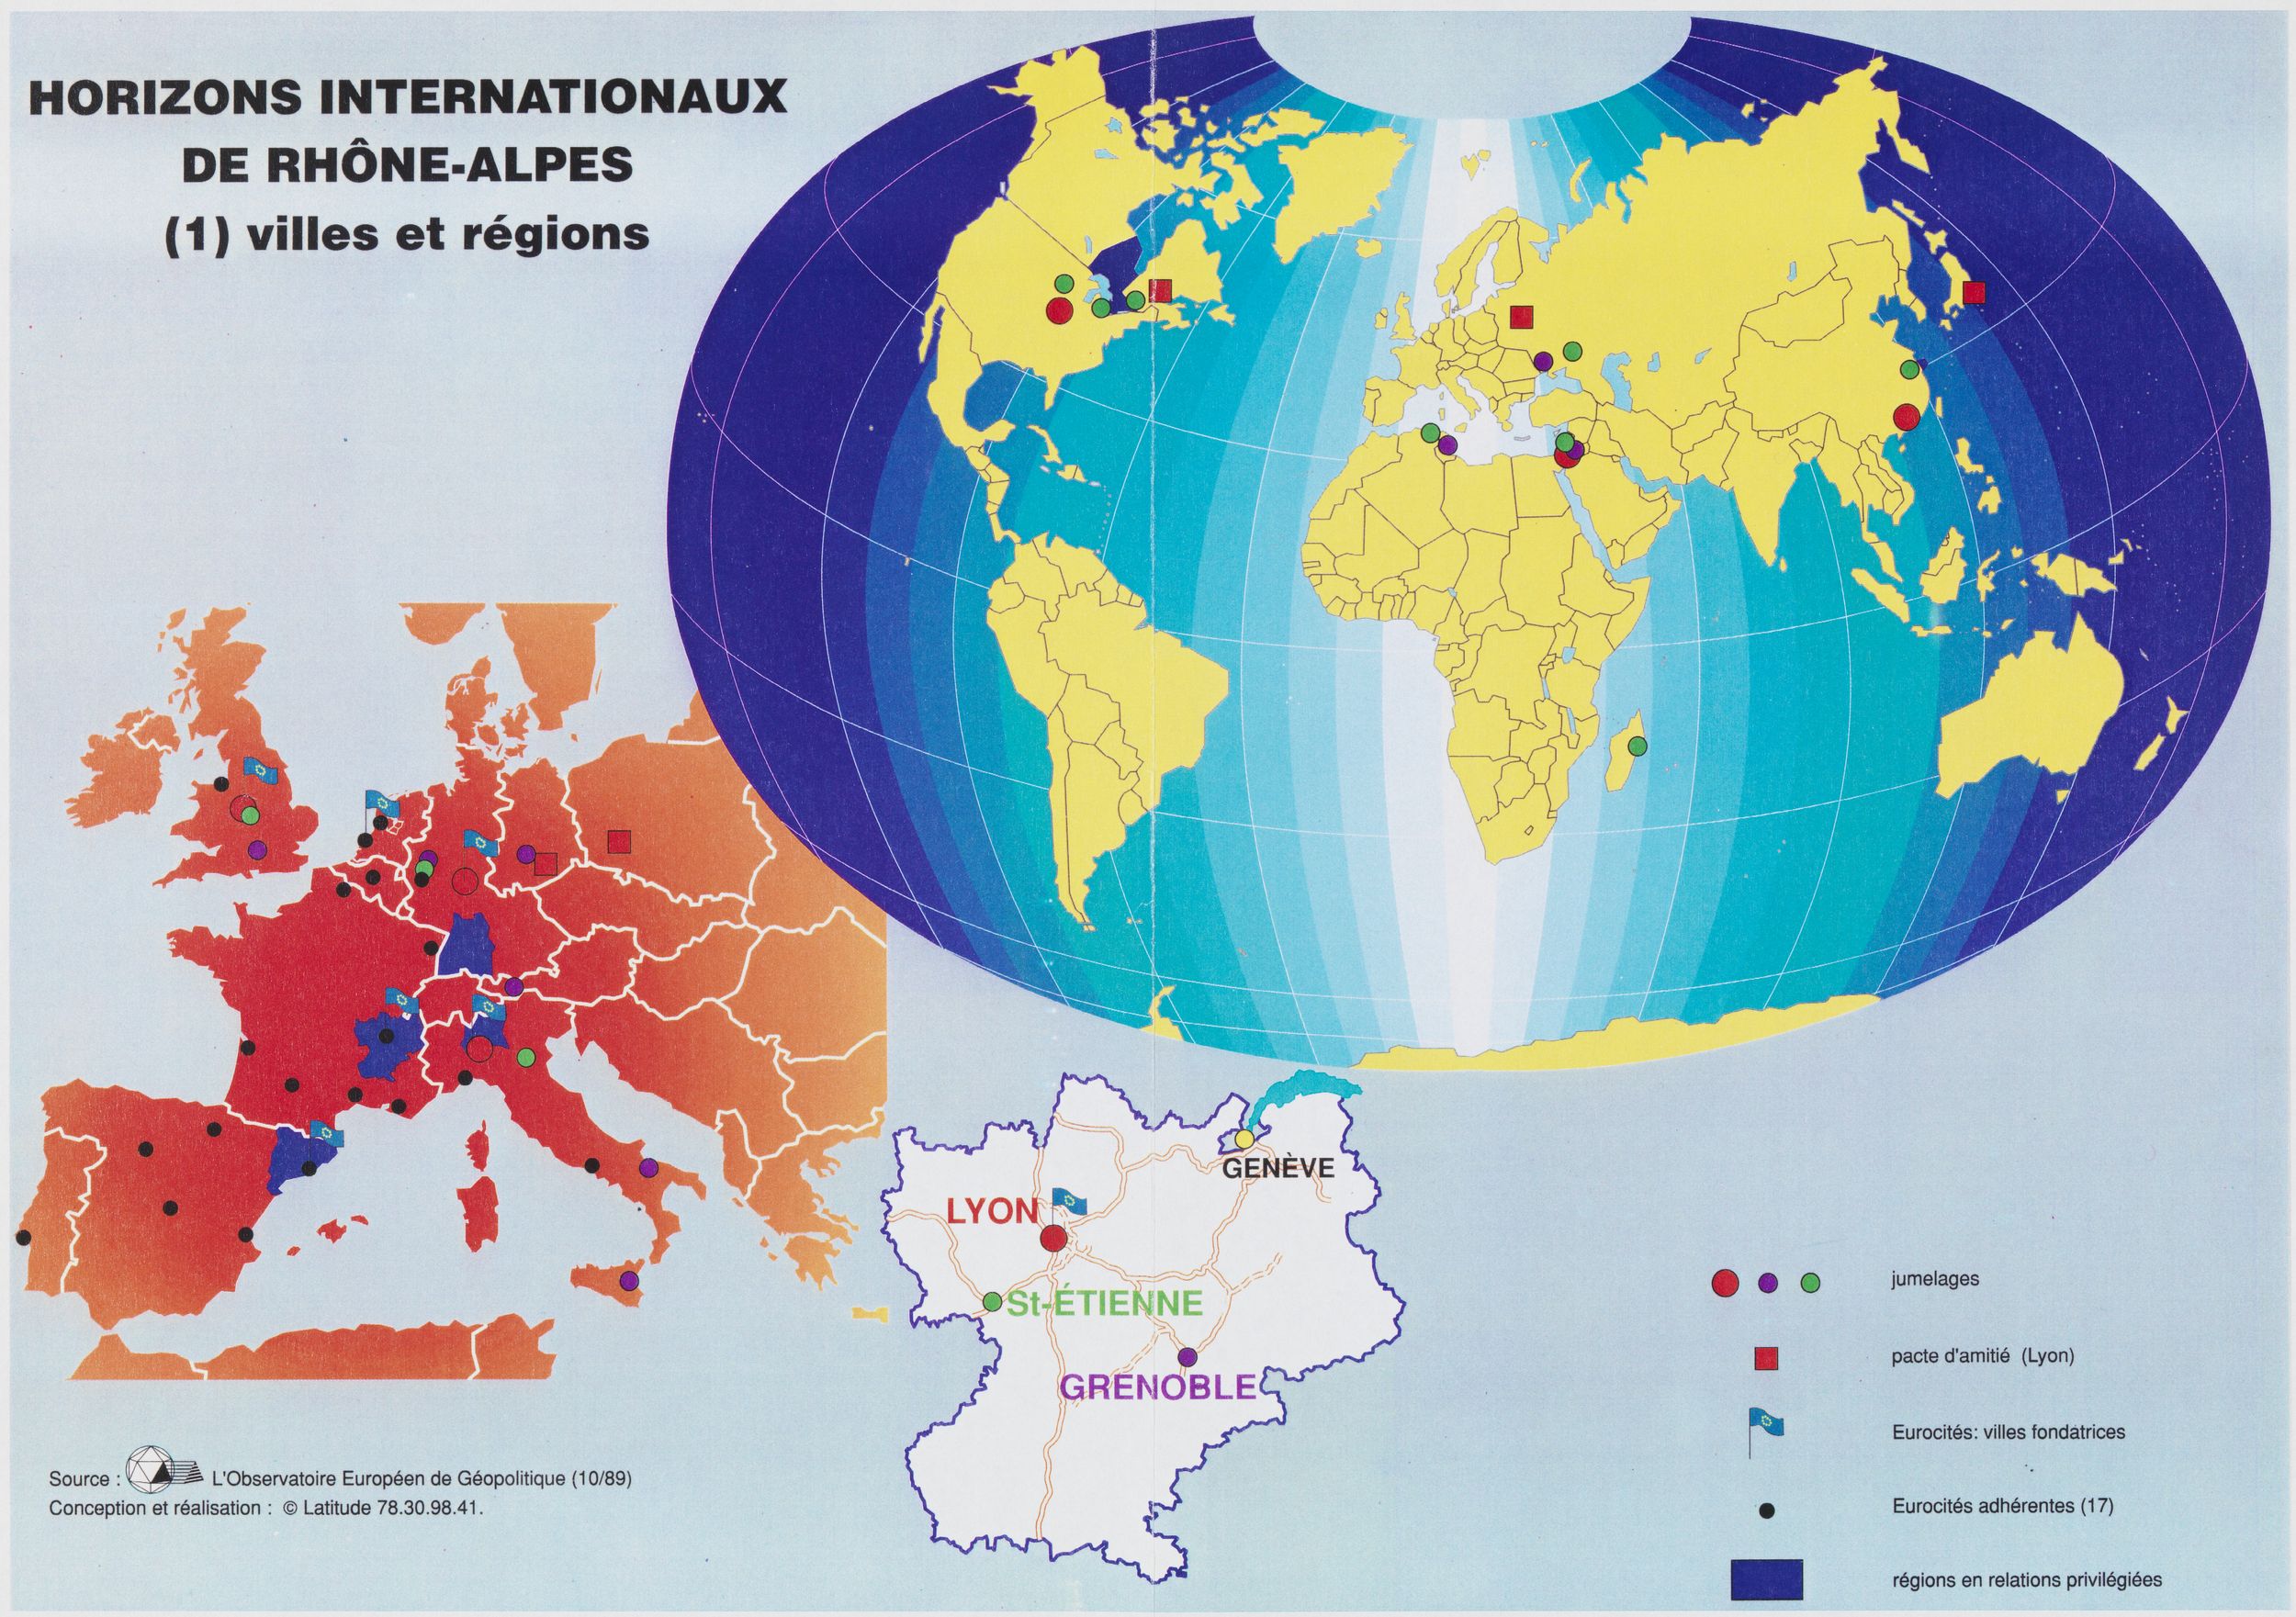 « Horizons internationaux de Rhône-Alpes » : cartes couleur Latitude (v. 1989-1990, cote 2185WP/12, repro. commerciale interdite)